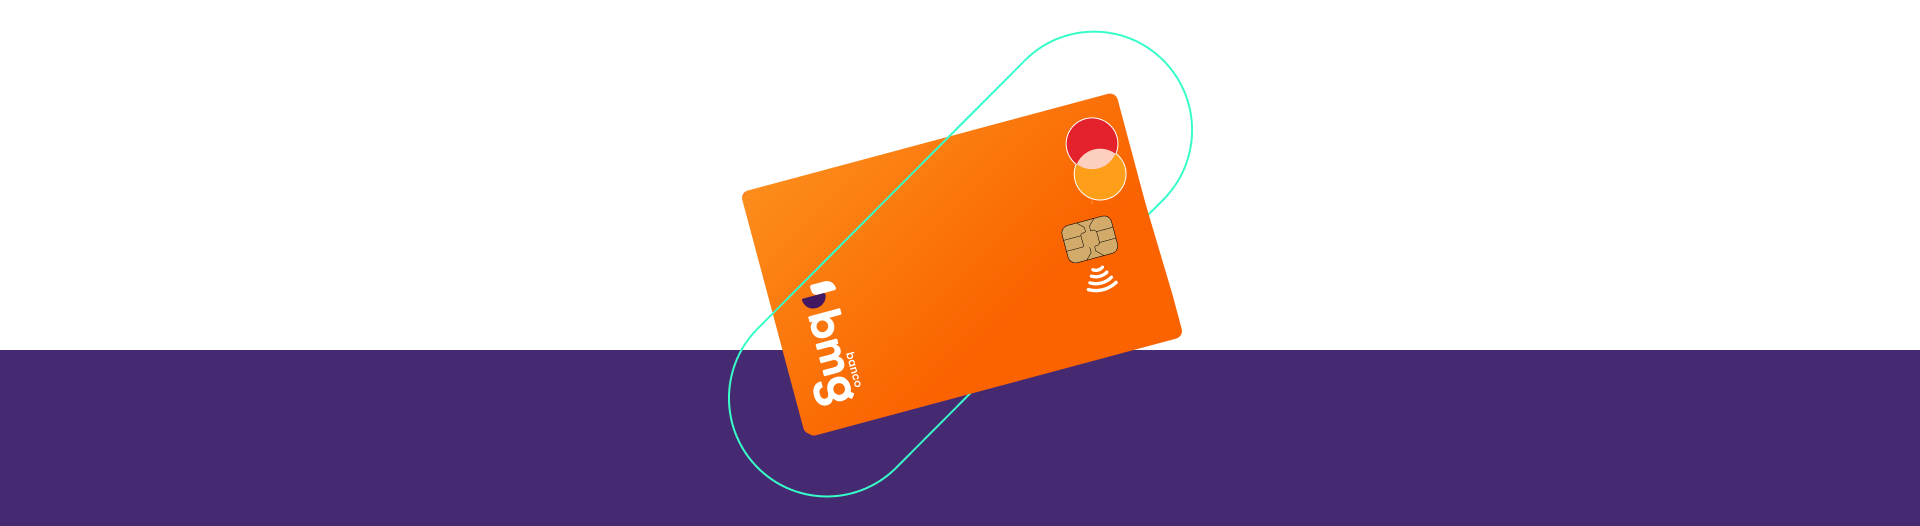 Cartão de crédito da conta digital Bmg